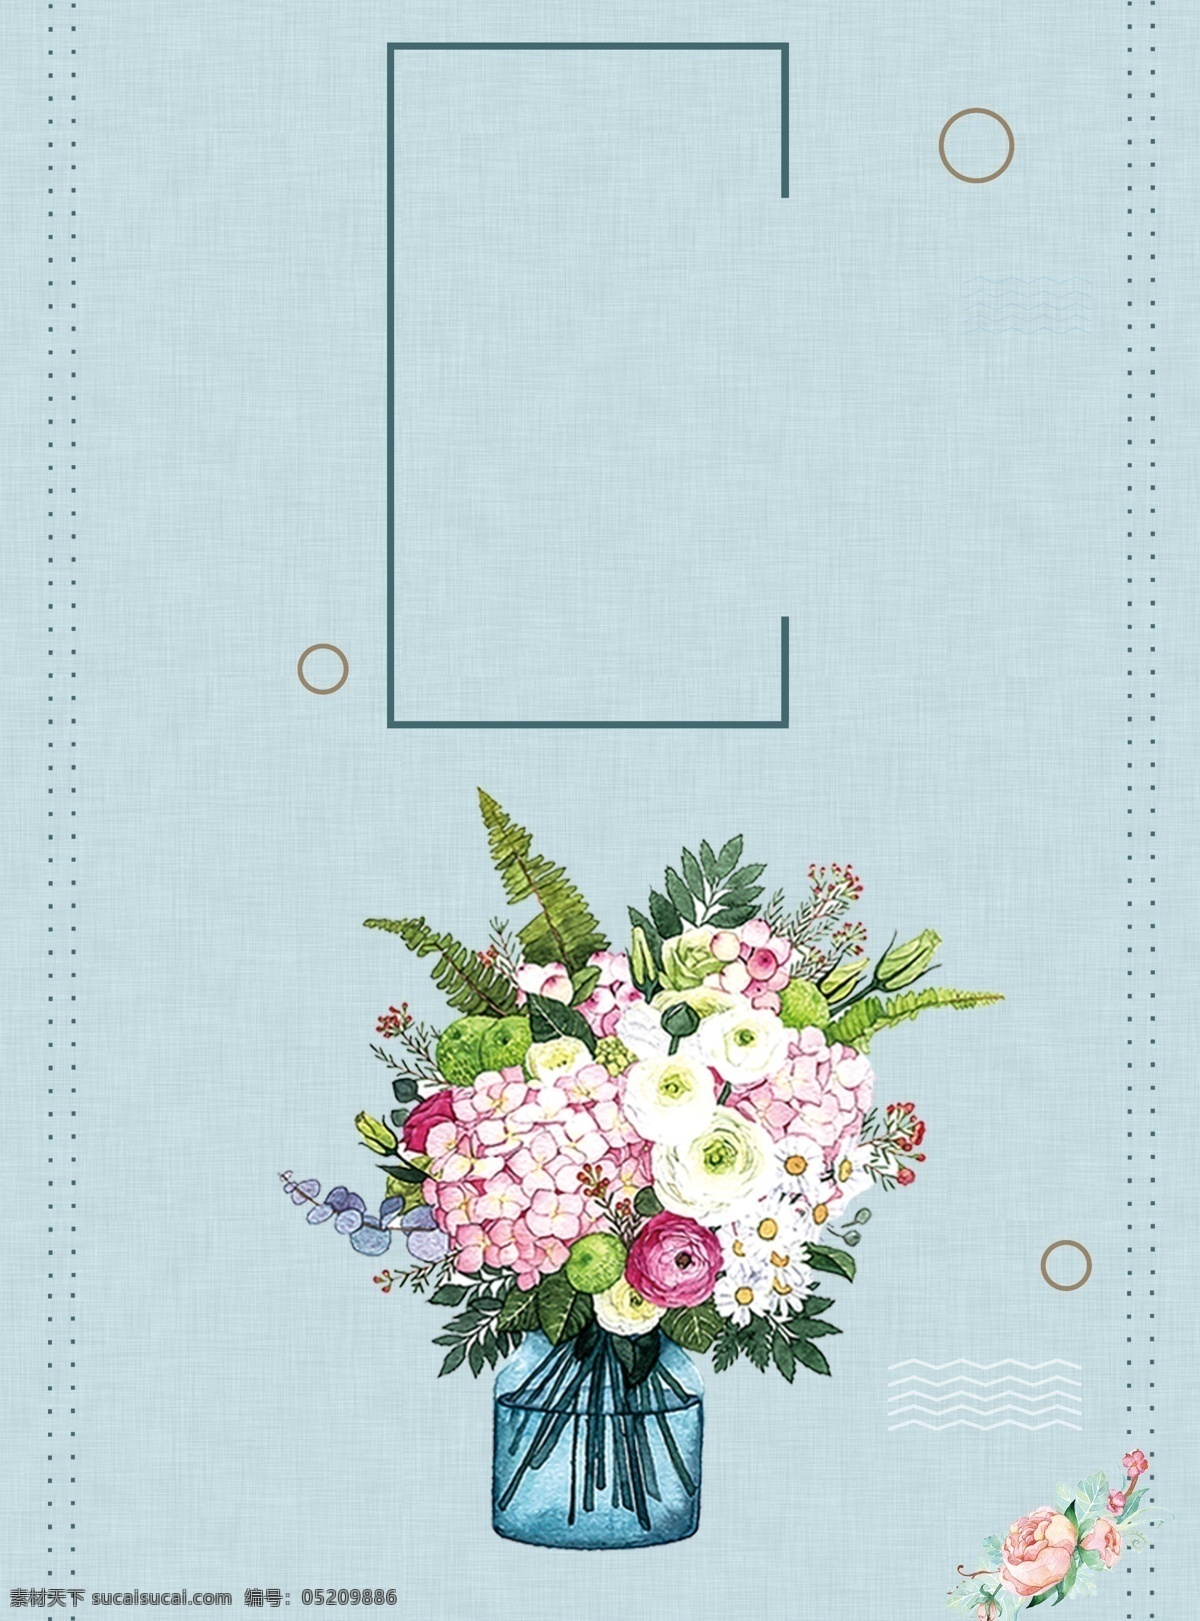 清新 文艺 花瓶 广告 背景 花朵 装饰 蓝色背景 广告背景 文雅 淡雅